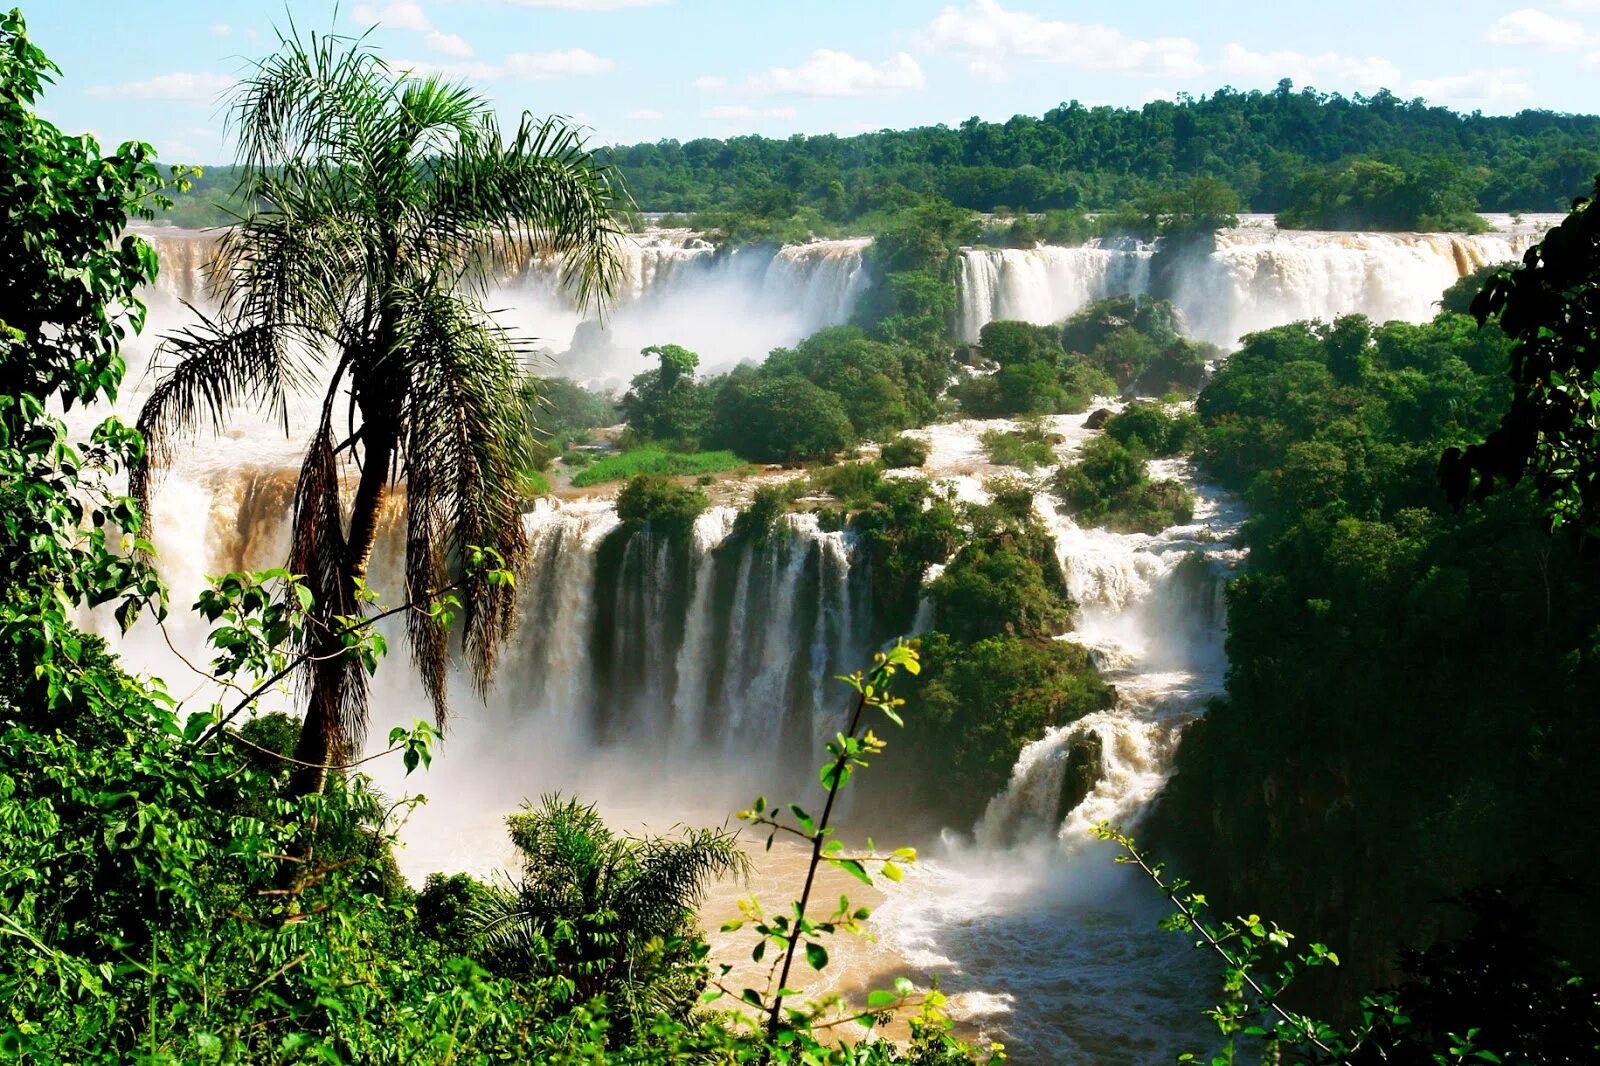 Игуасу (национальный парк, Аргентина). Водопады Игуасу Аргентина Бразилия. Национальный парк Игуасу, Бразилия / Аргентина. Водопад Игуасу в Южной Америке.